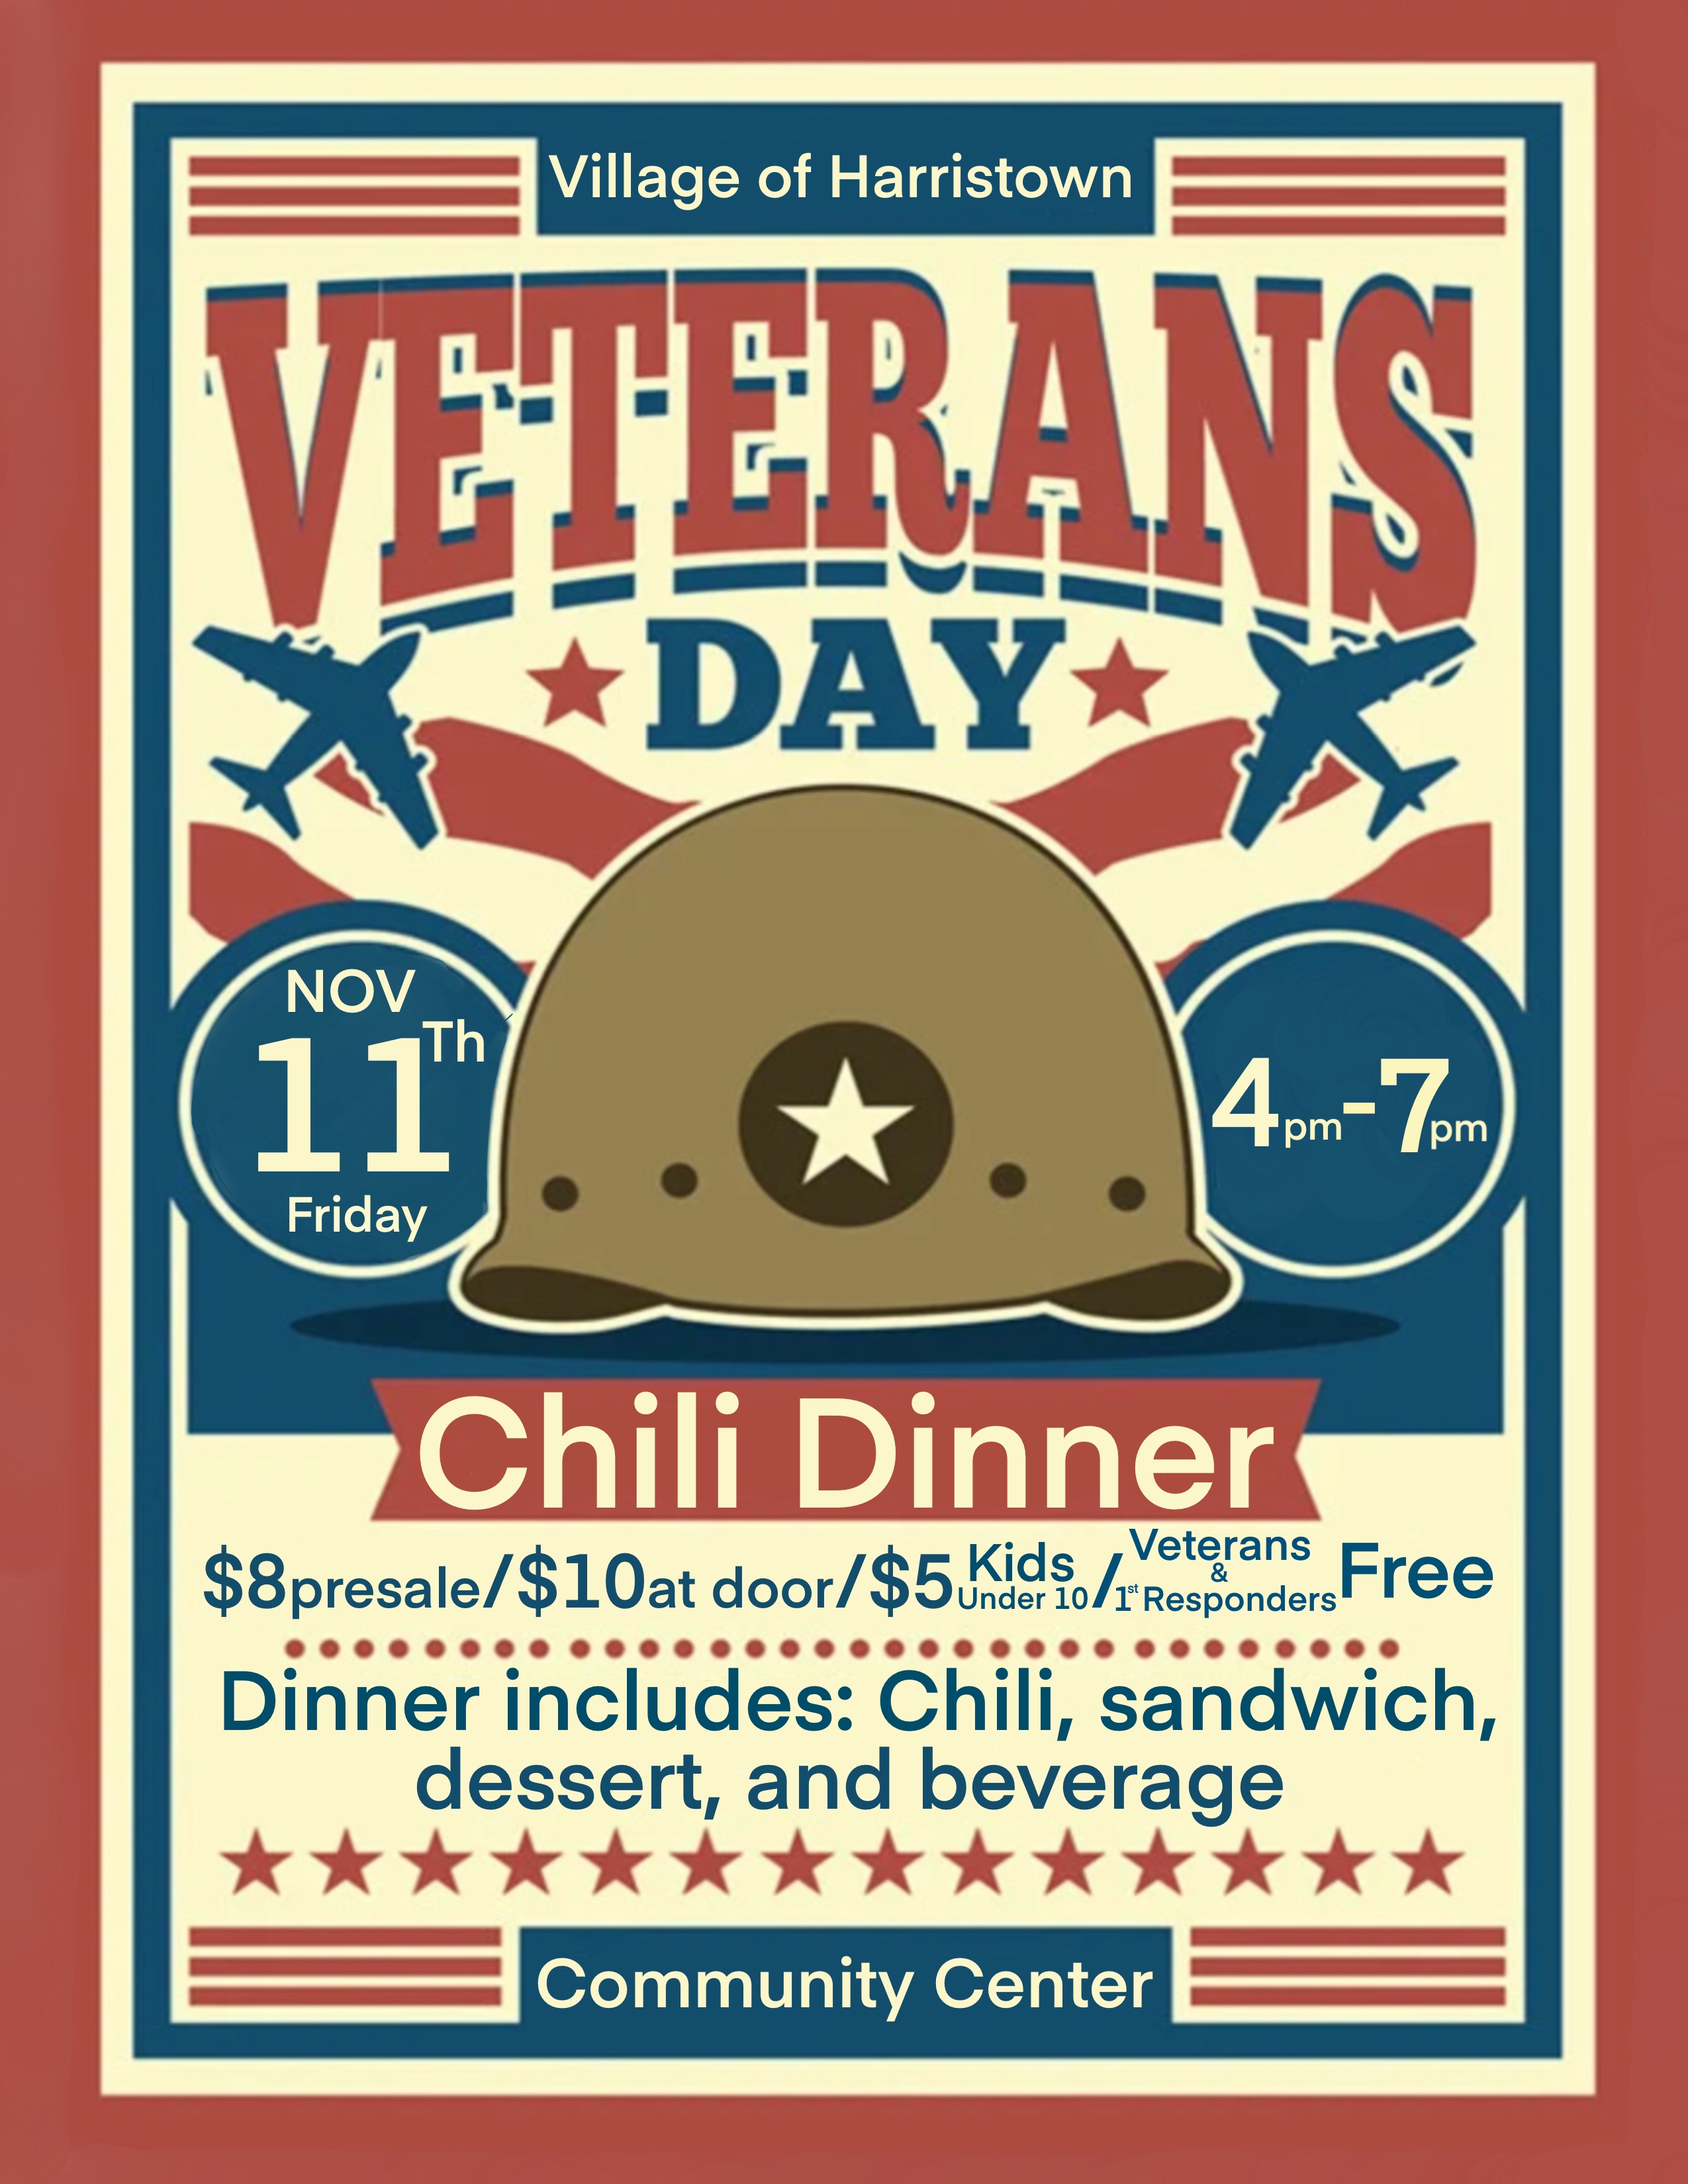 Veteran's Day dinner flyer